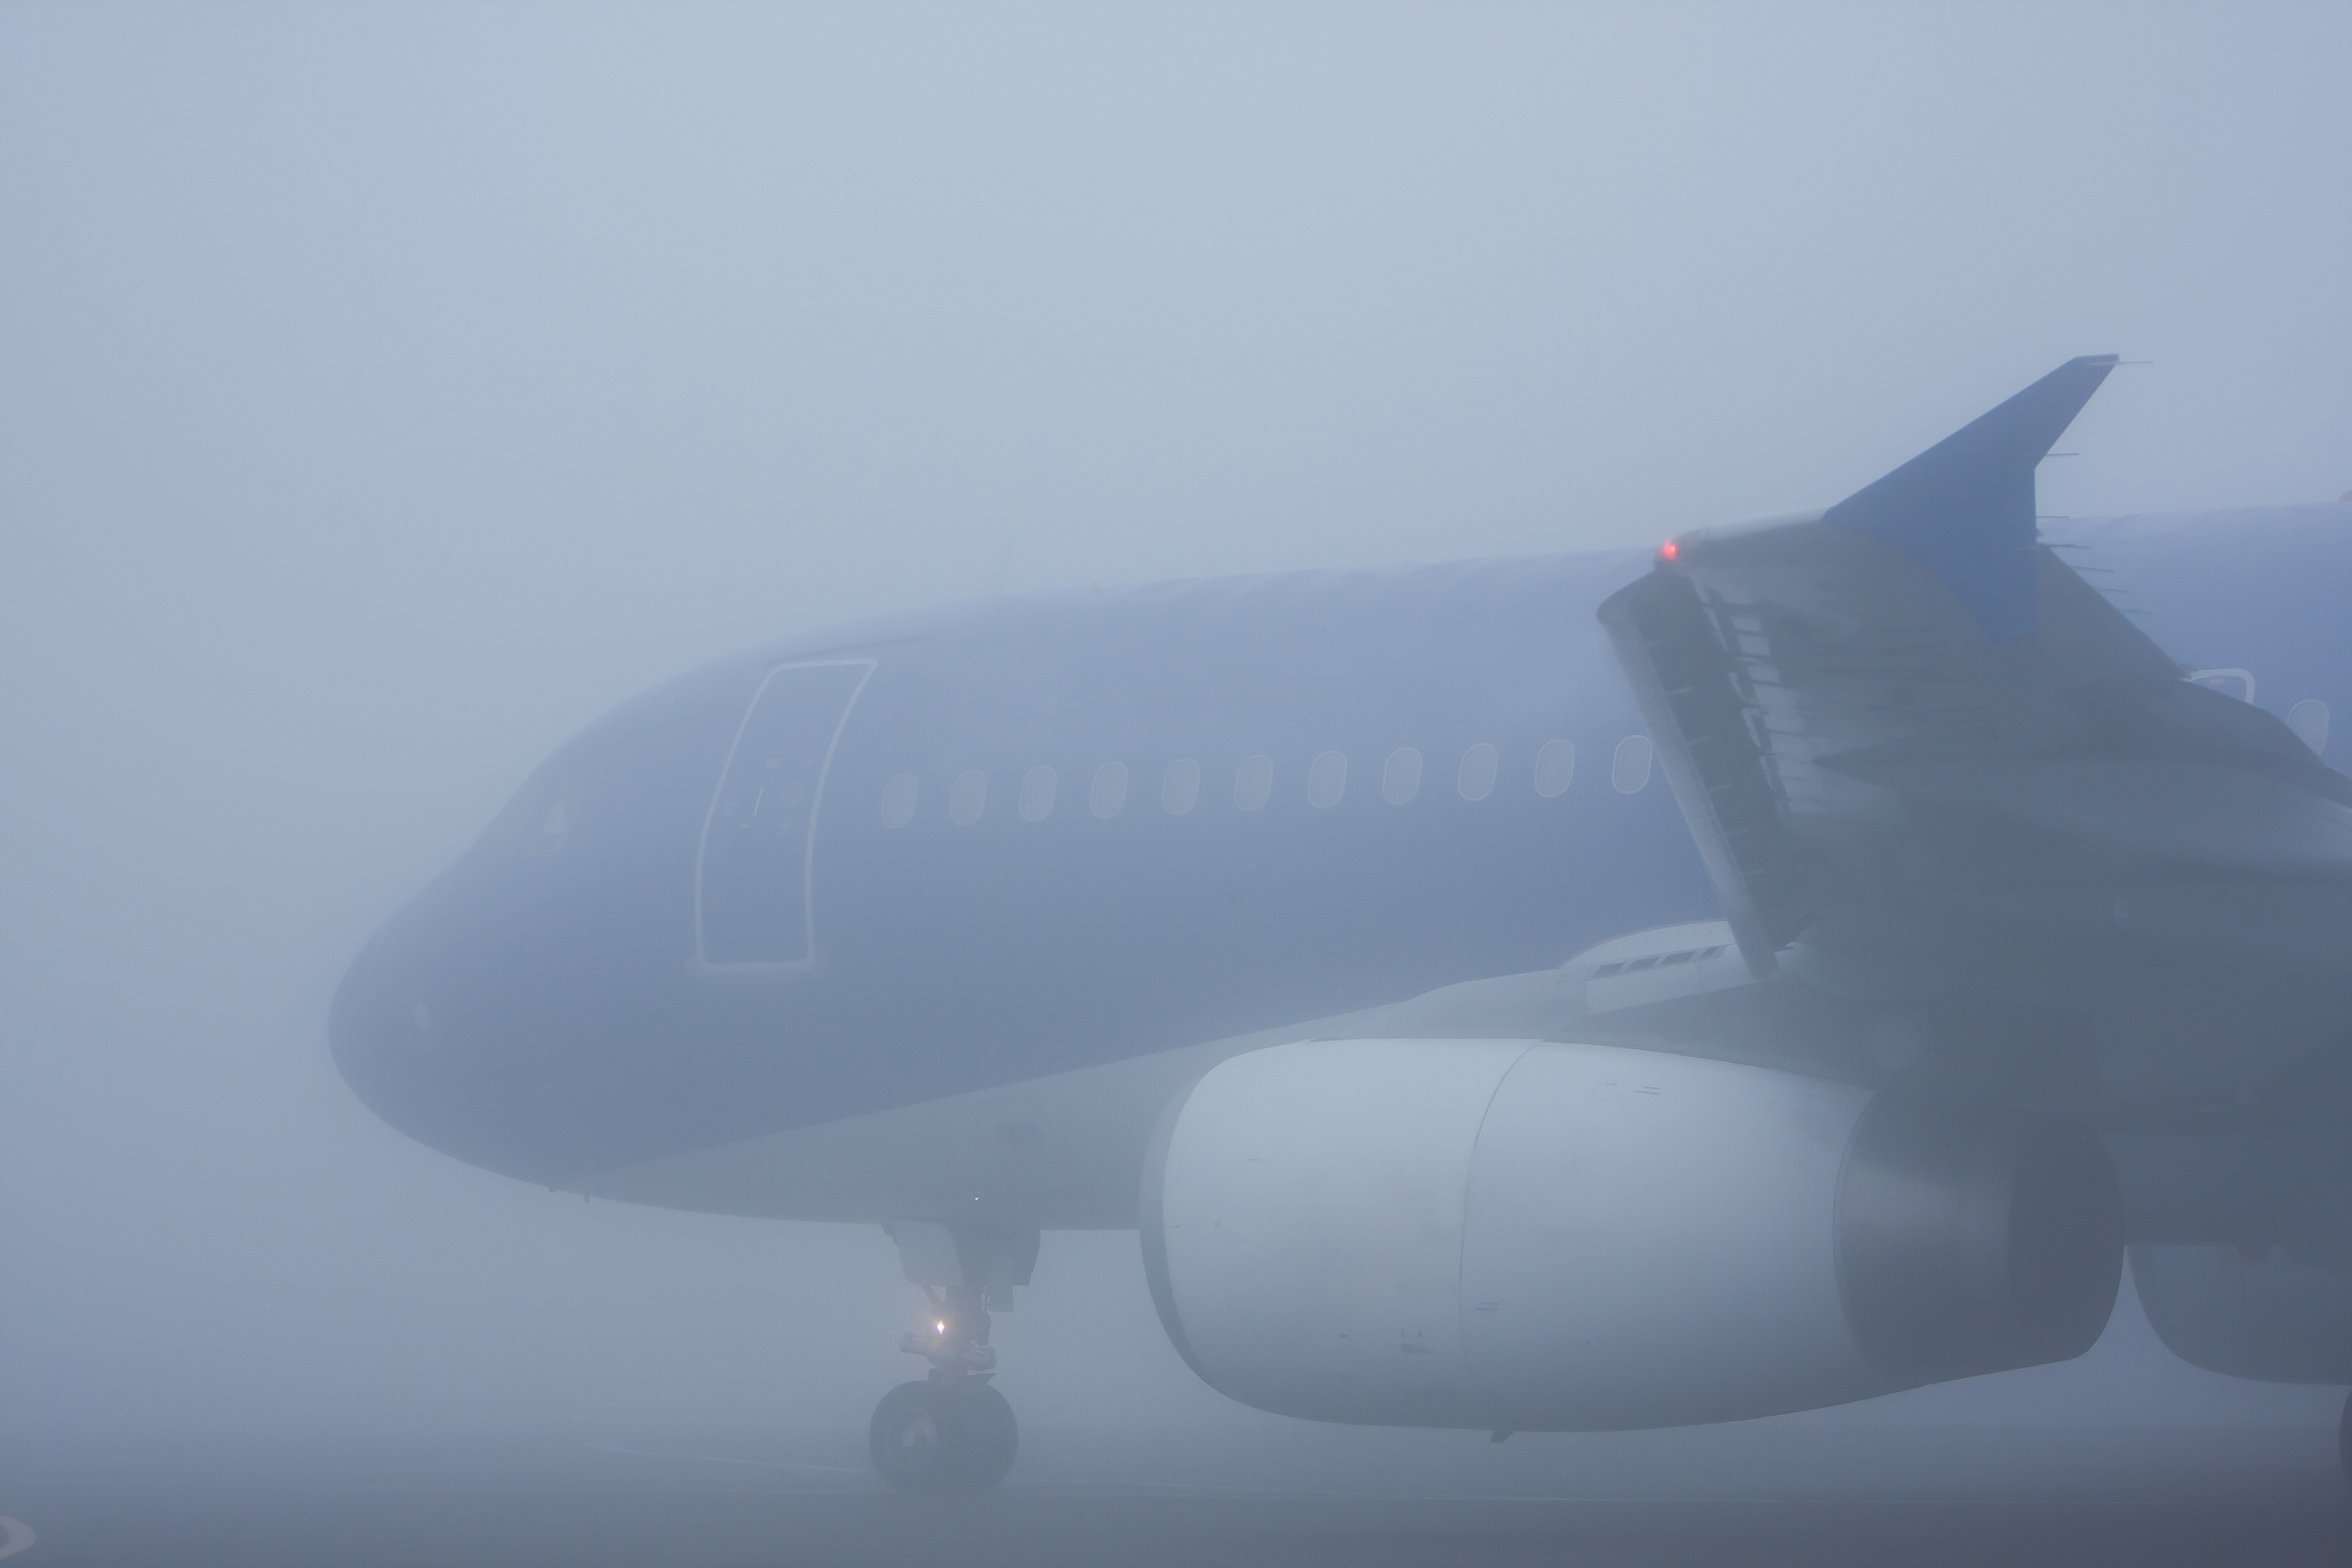 Aeroplane in dense fog